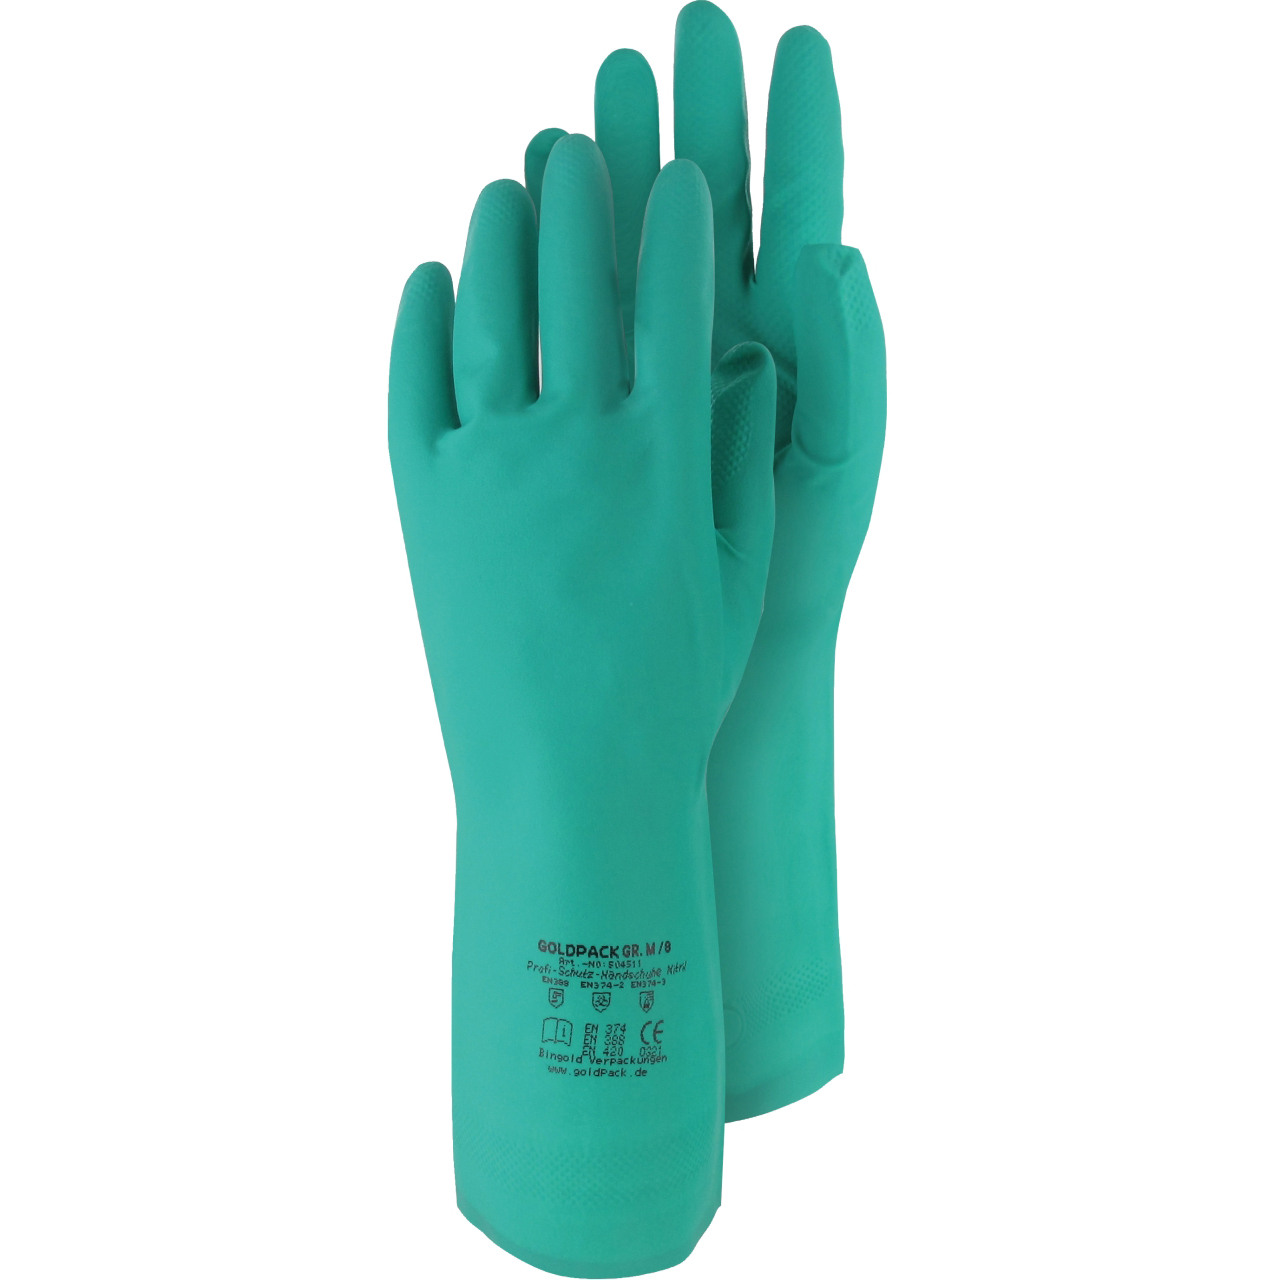 Triuso Chemik-Handschuh, Gr. XL